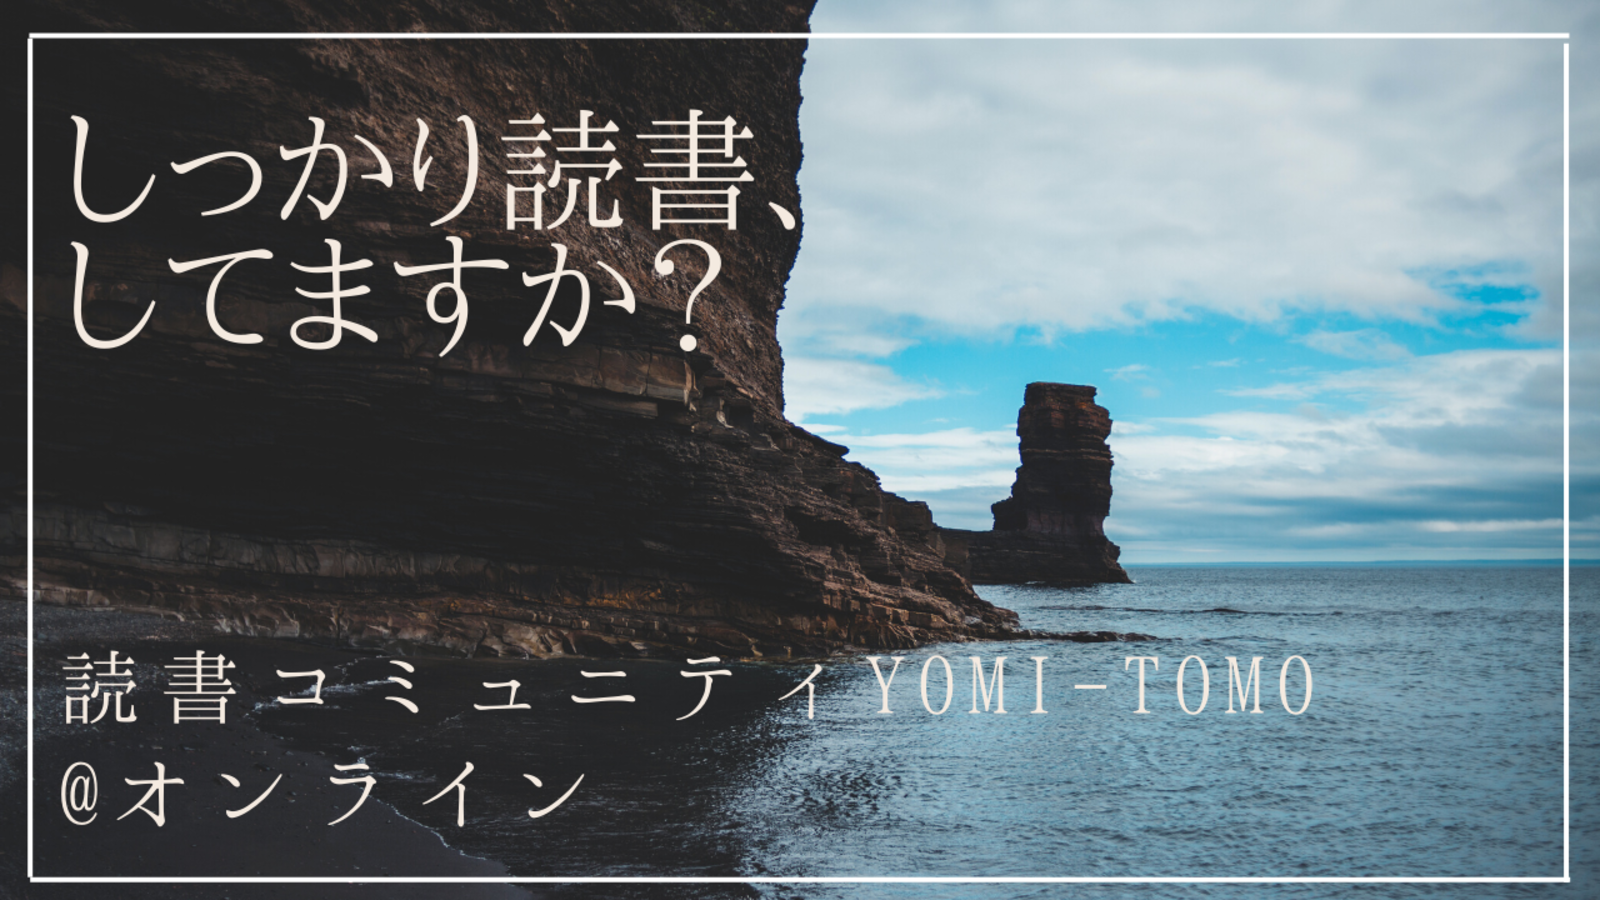 第3回YOMI-TOMO@オンライン